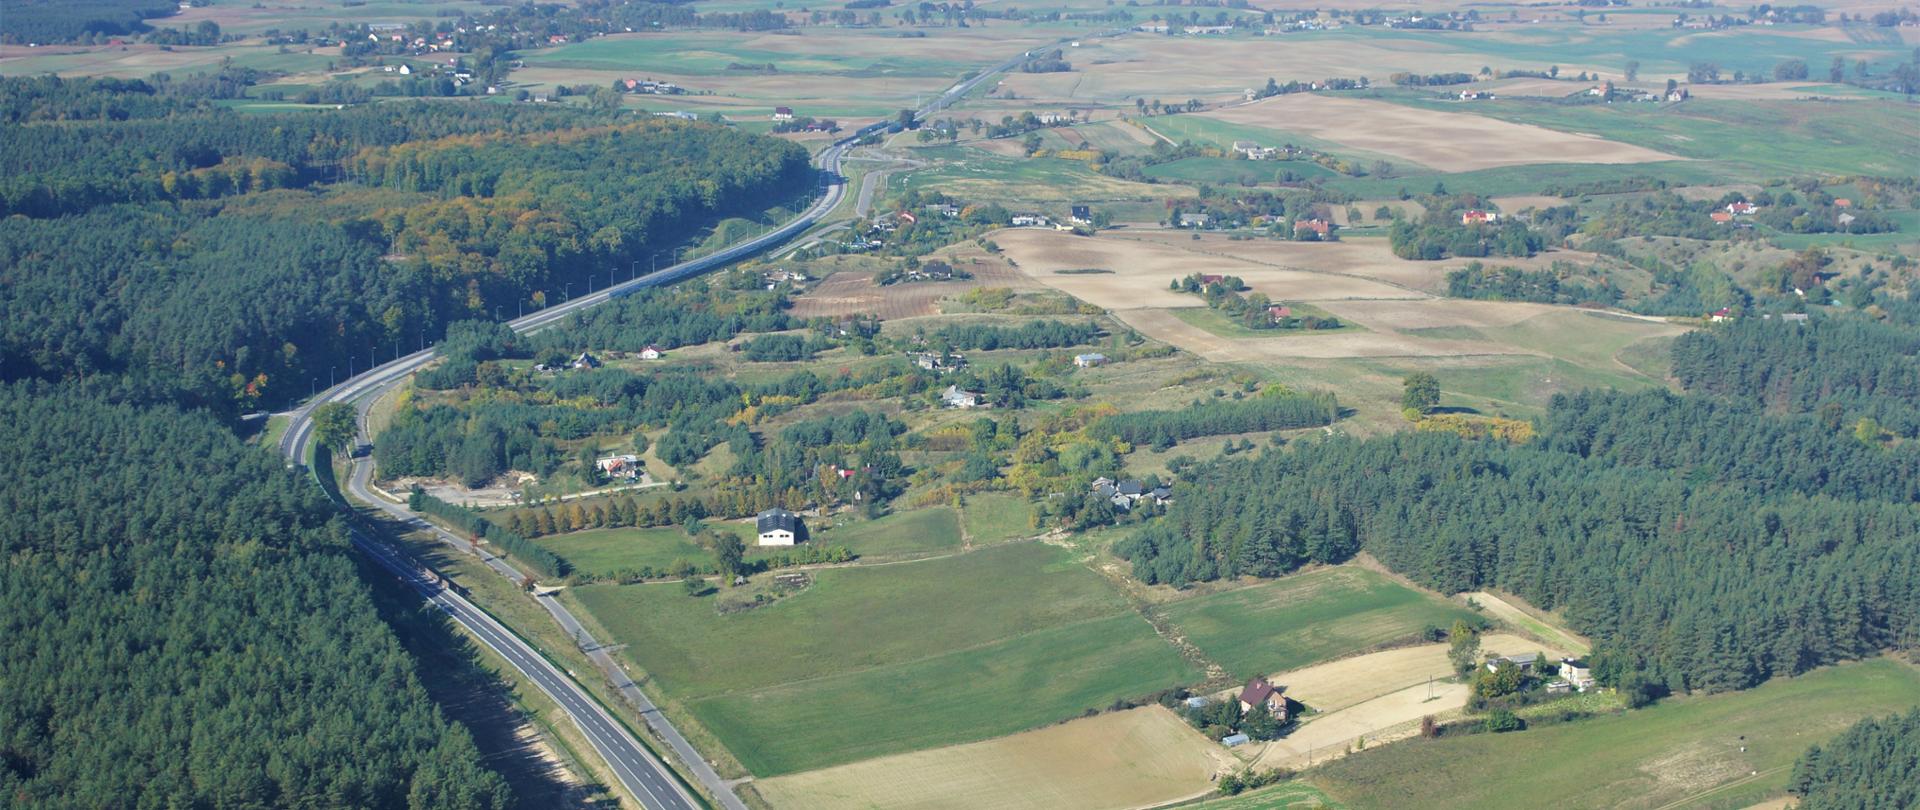 Zdjęcie ilustracyjne drogi krajowej przechodzącej przez tereny rolnicze i leśne. W centrum wstęga drogi, po lewej las, a po prawej krajobraz rolniczy z polami i gospodarstwami rolnymi.